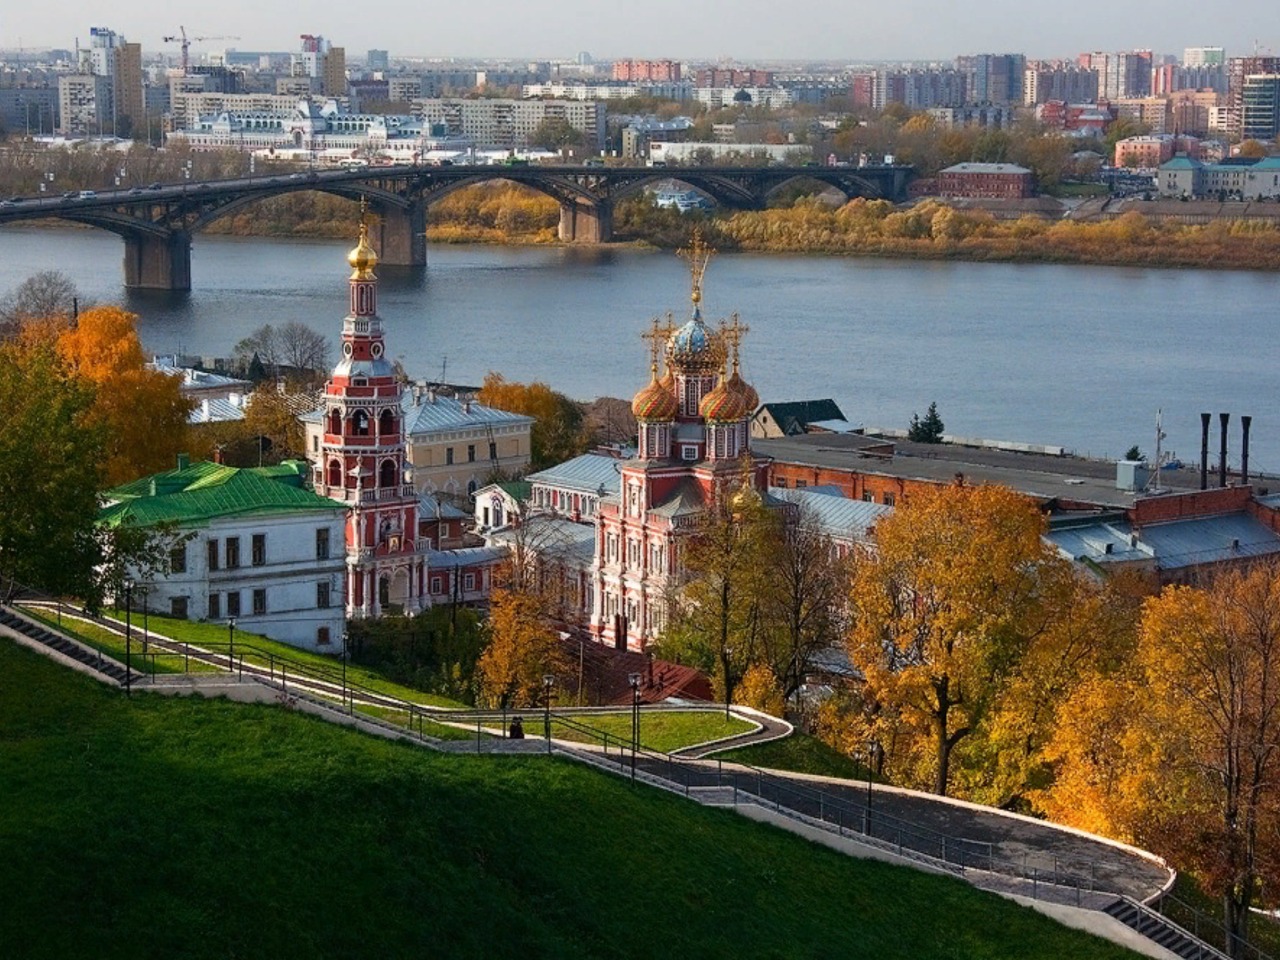 Обзорная экскурсия по Нижнему Новгороду | Цена 6250₽, отзывы, описание экскурсии